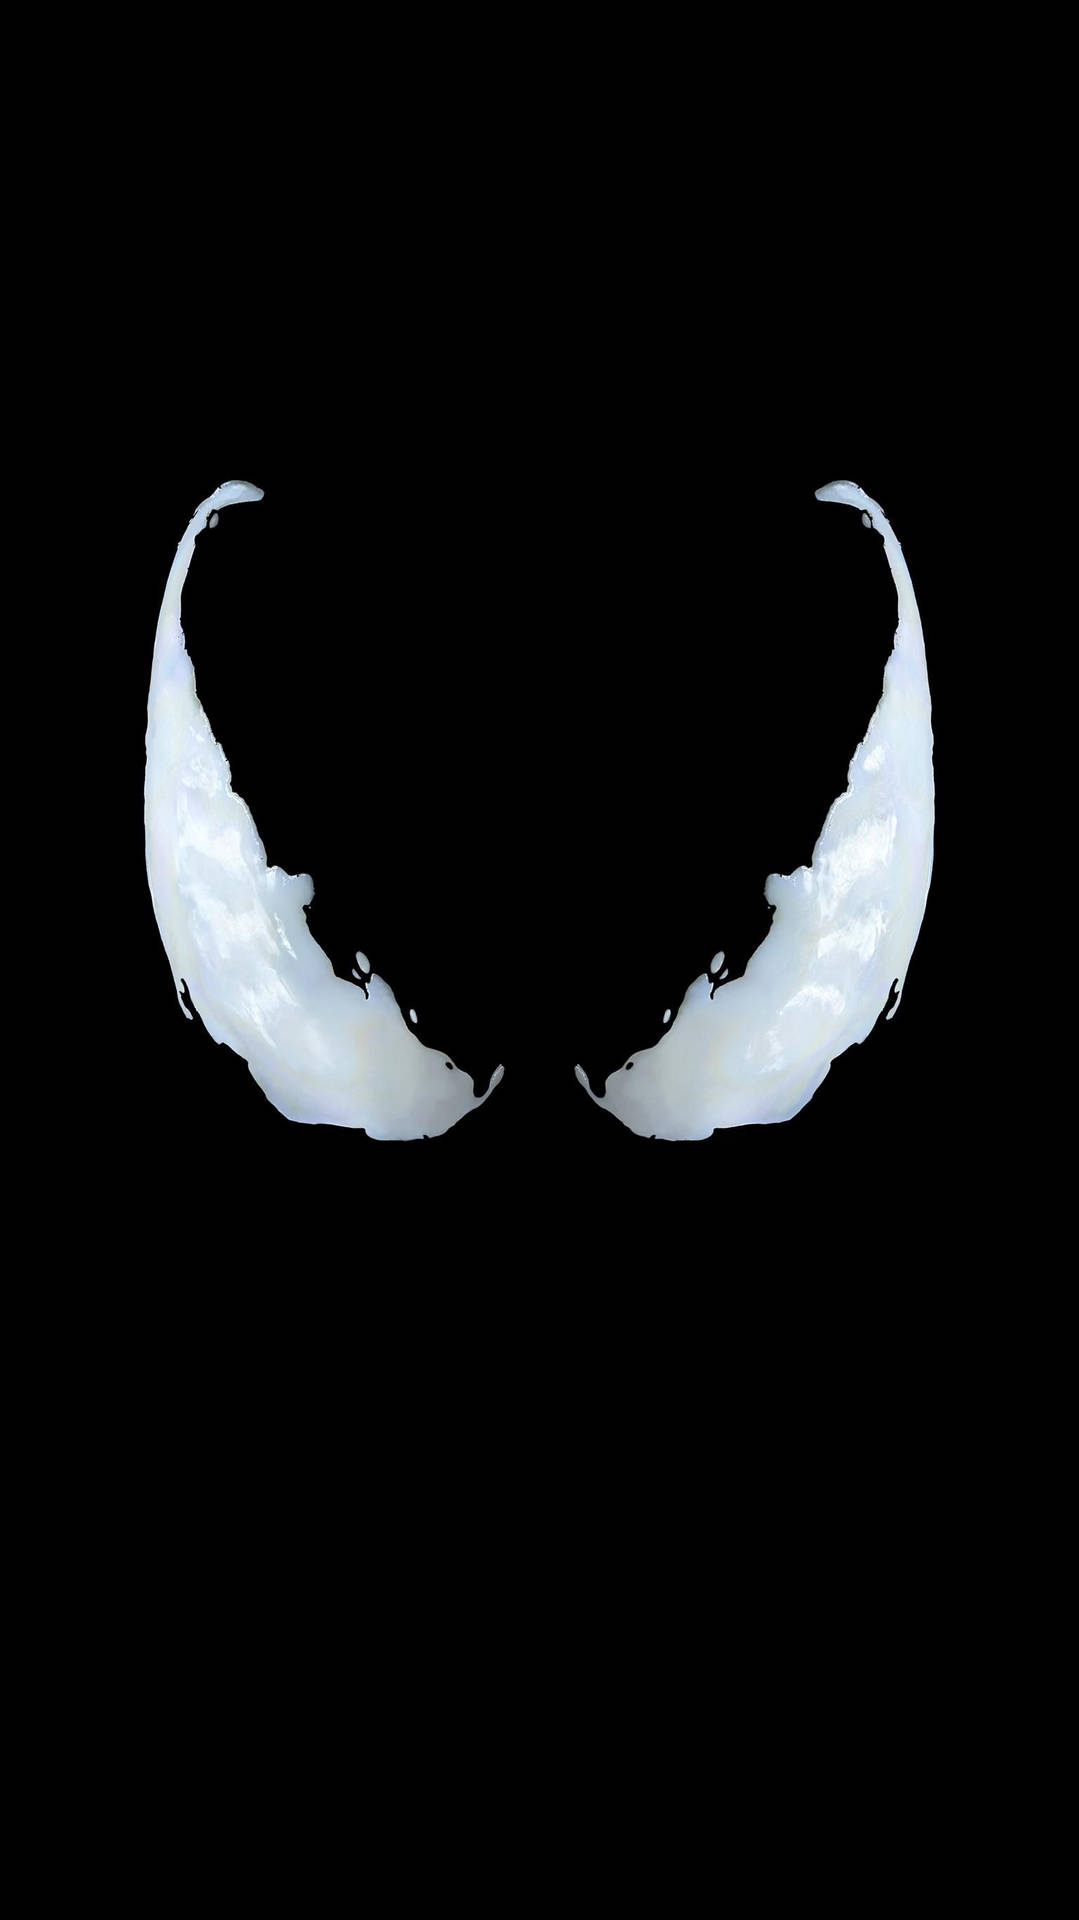 Venom Movie Iconic White Eyes Background